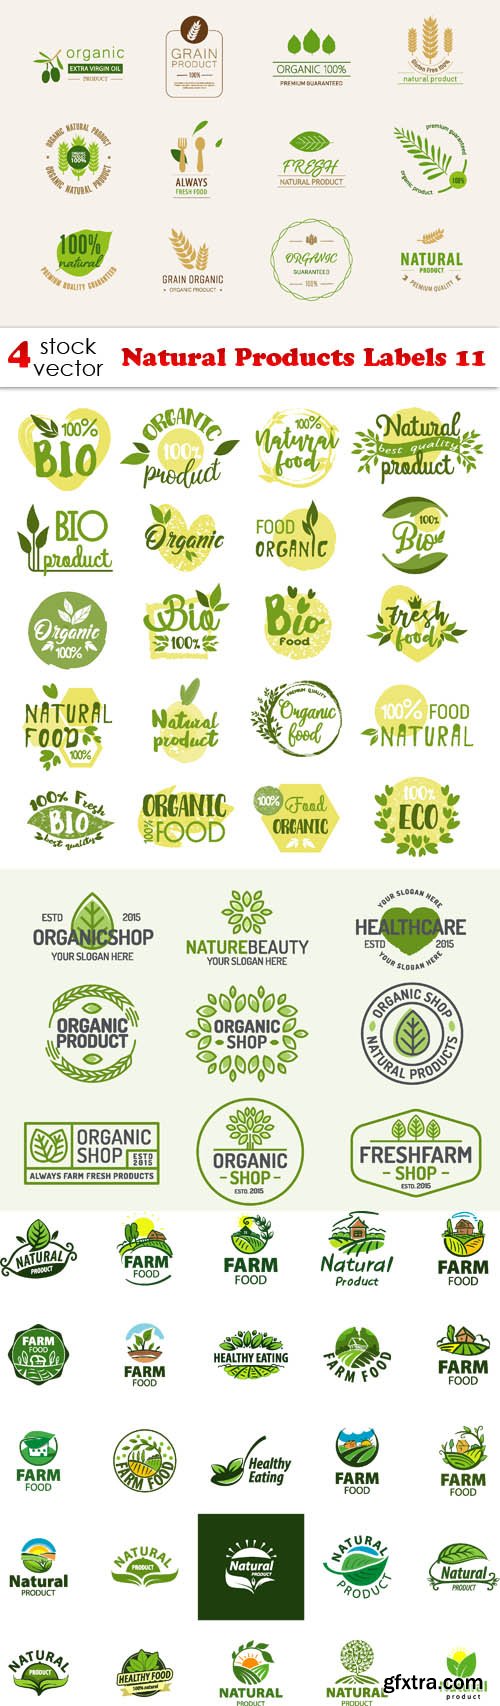 Vectors - Natural Products Labels 11